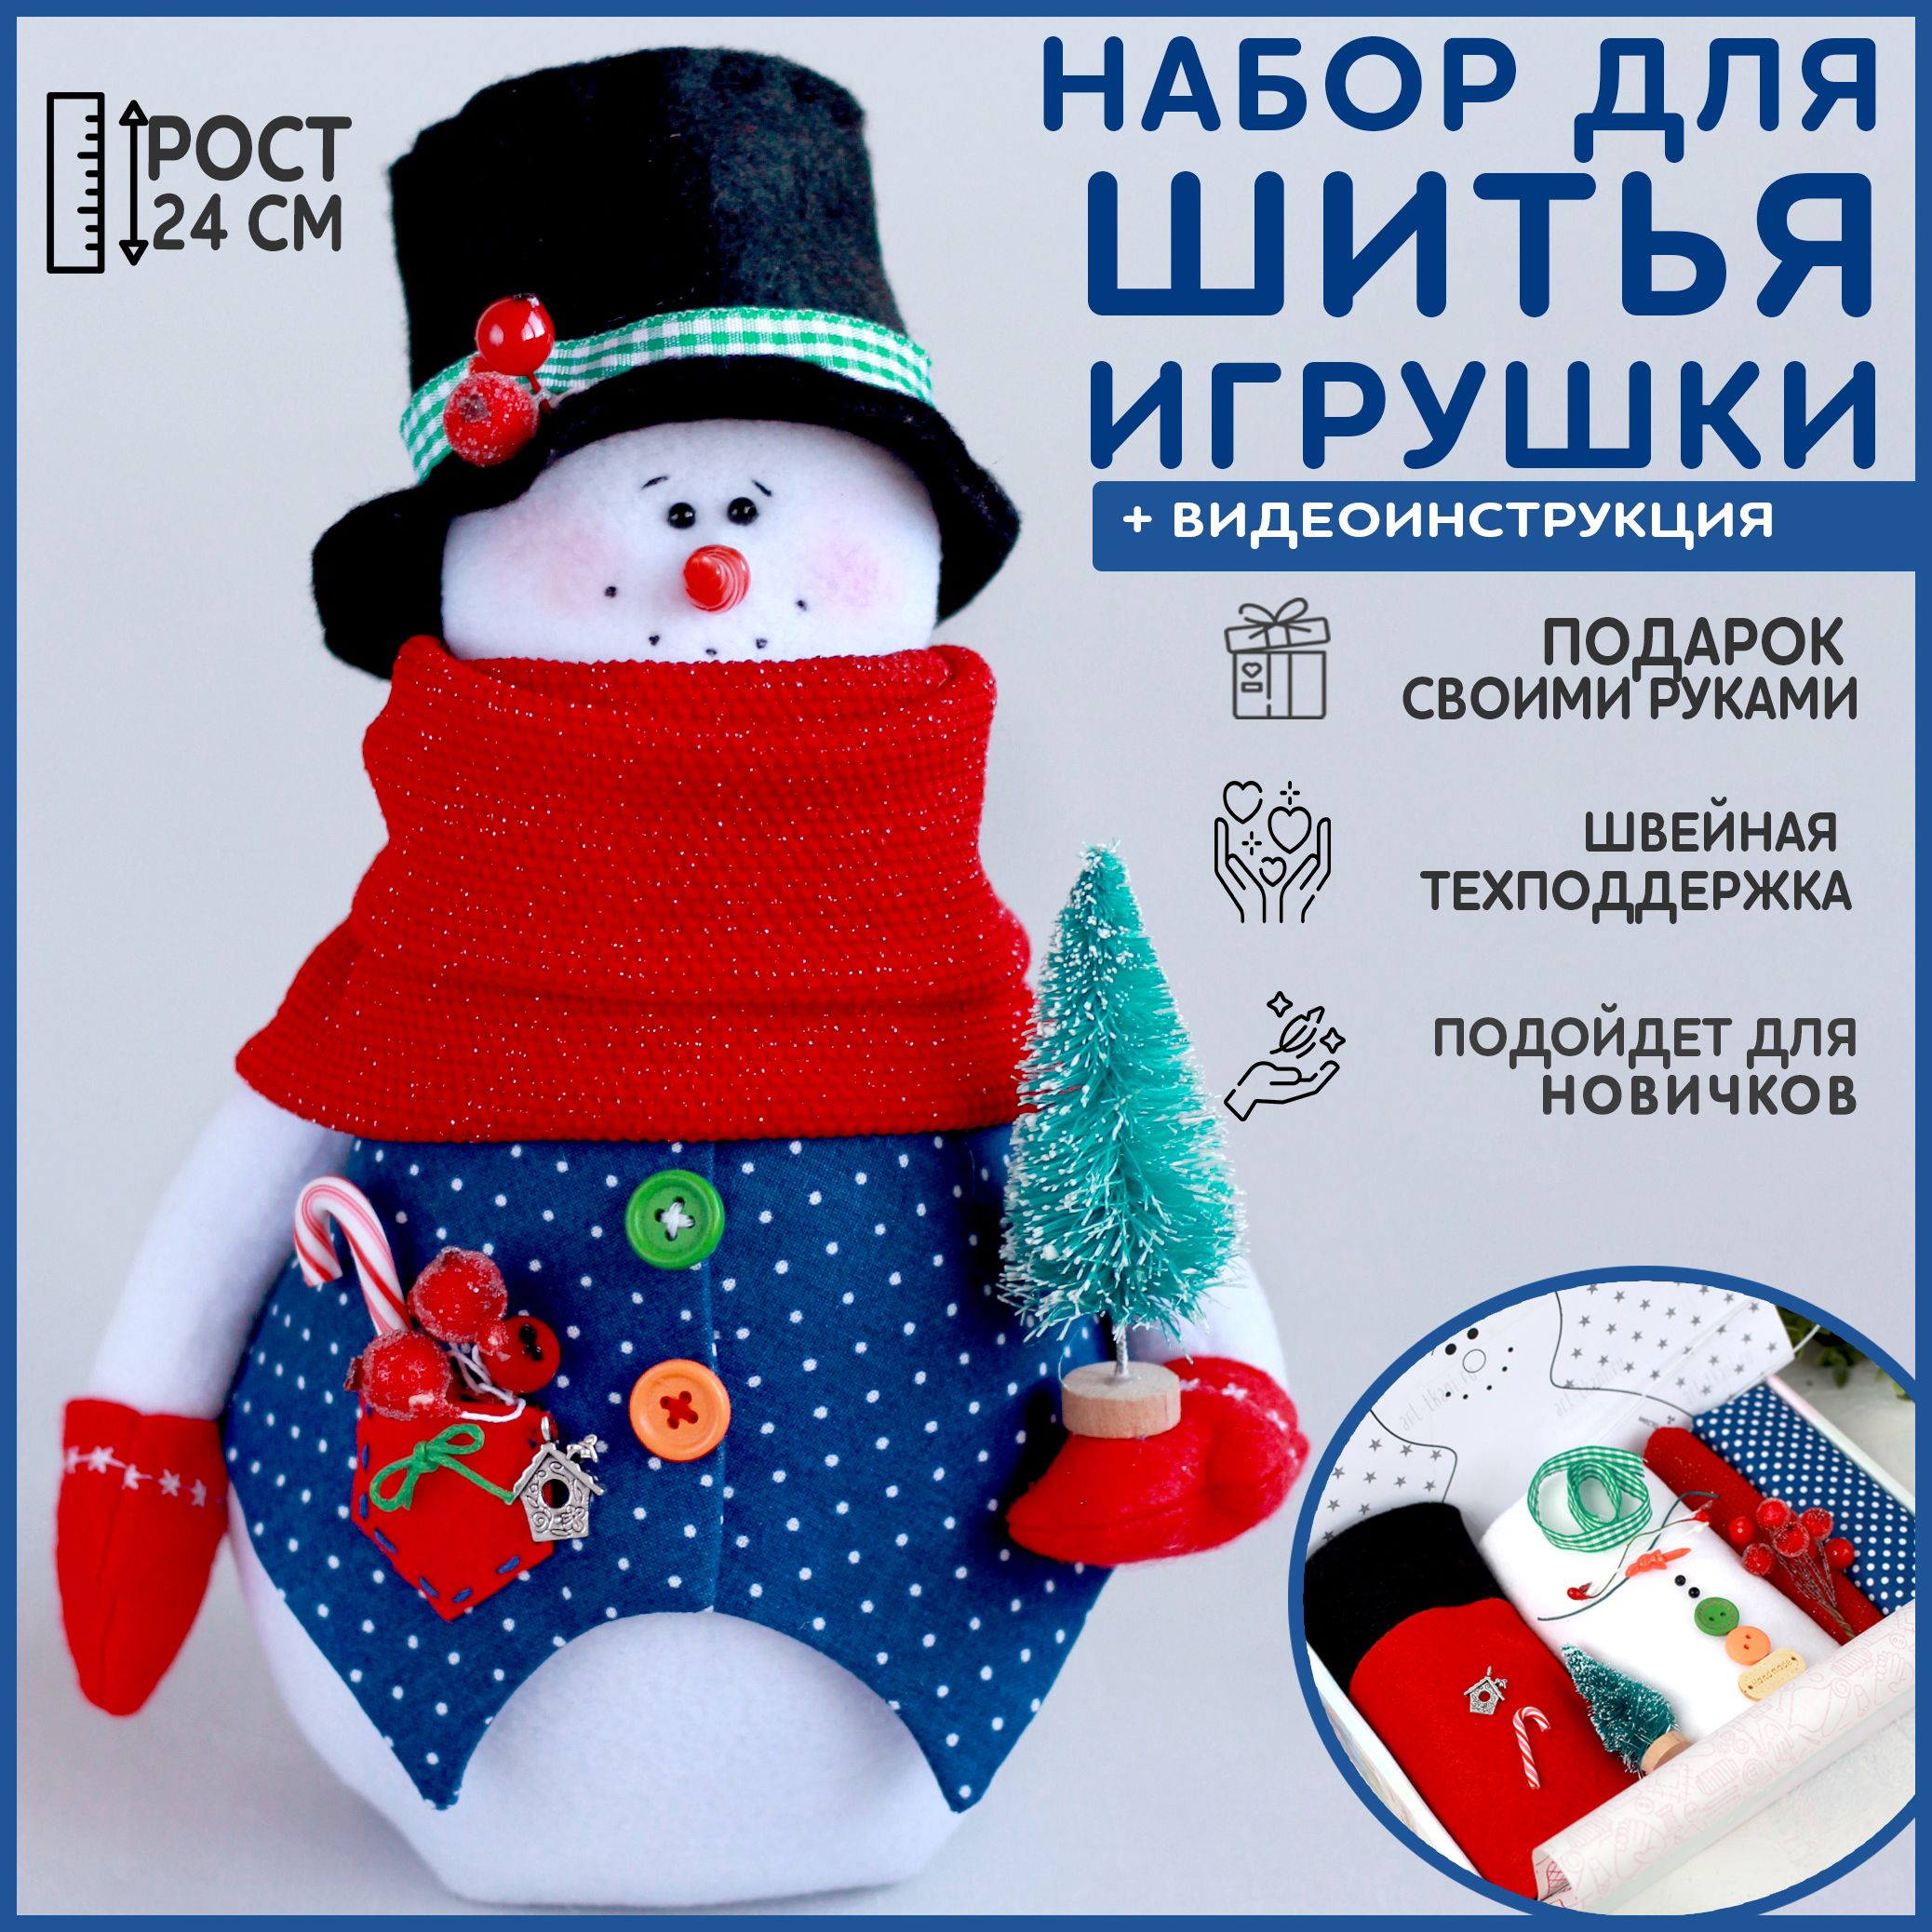 В клубе «Резонанс» дети научились делать своими руками куклу и снеговика из ткани